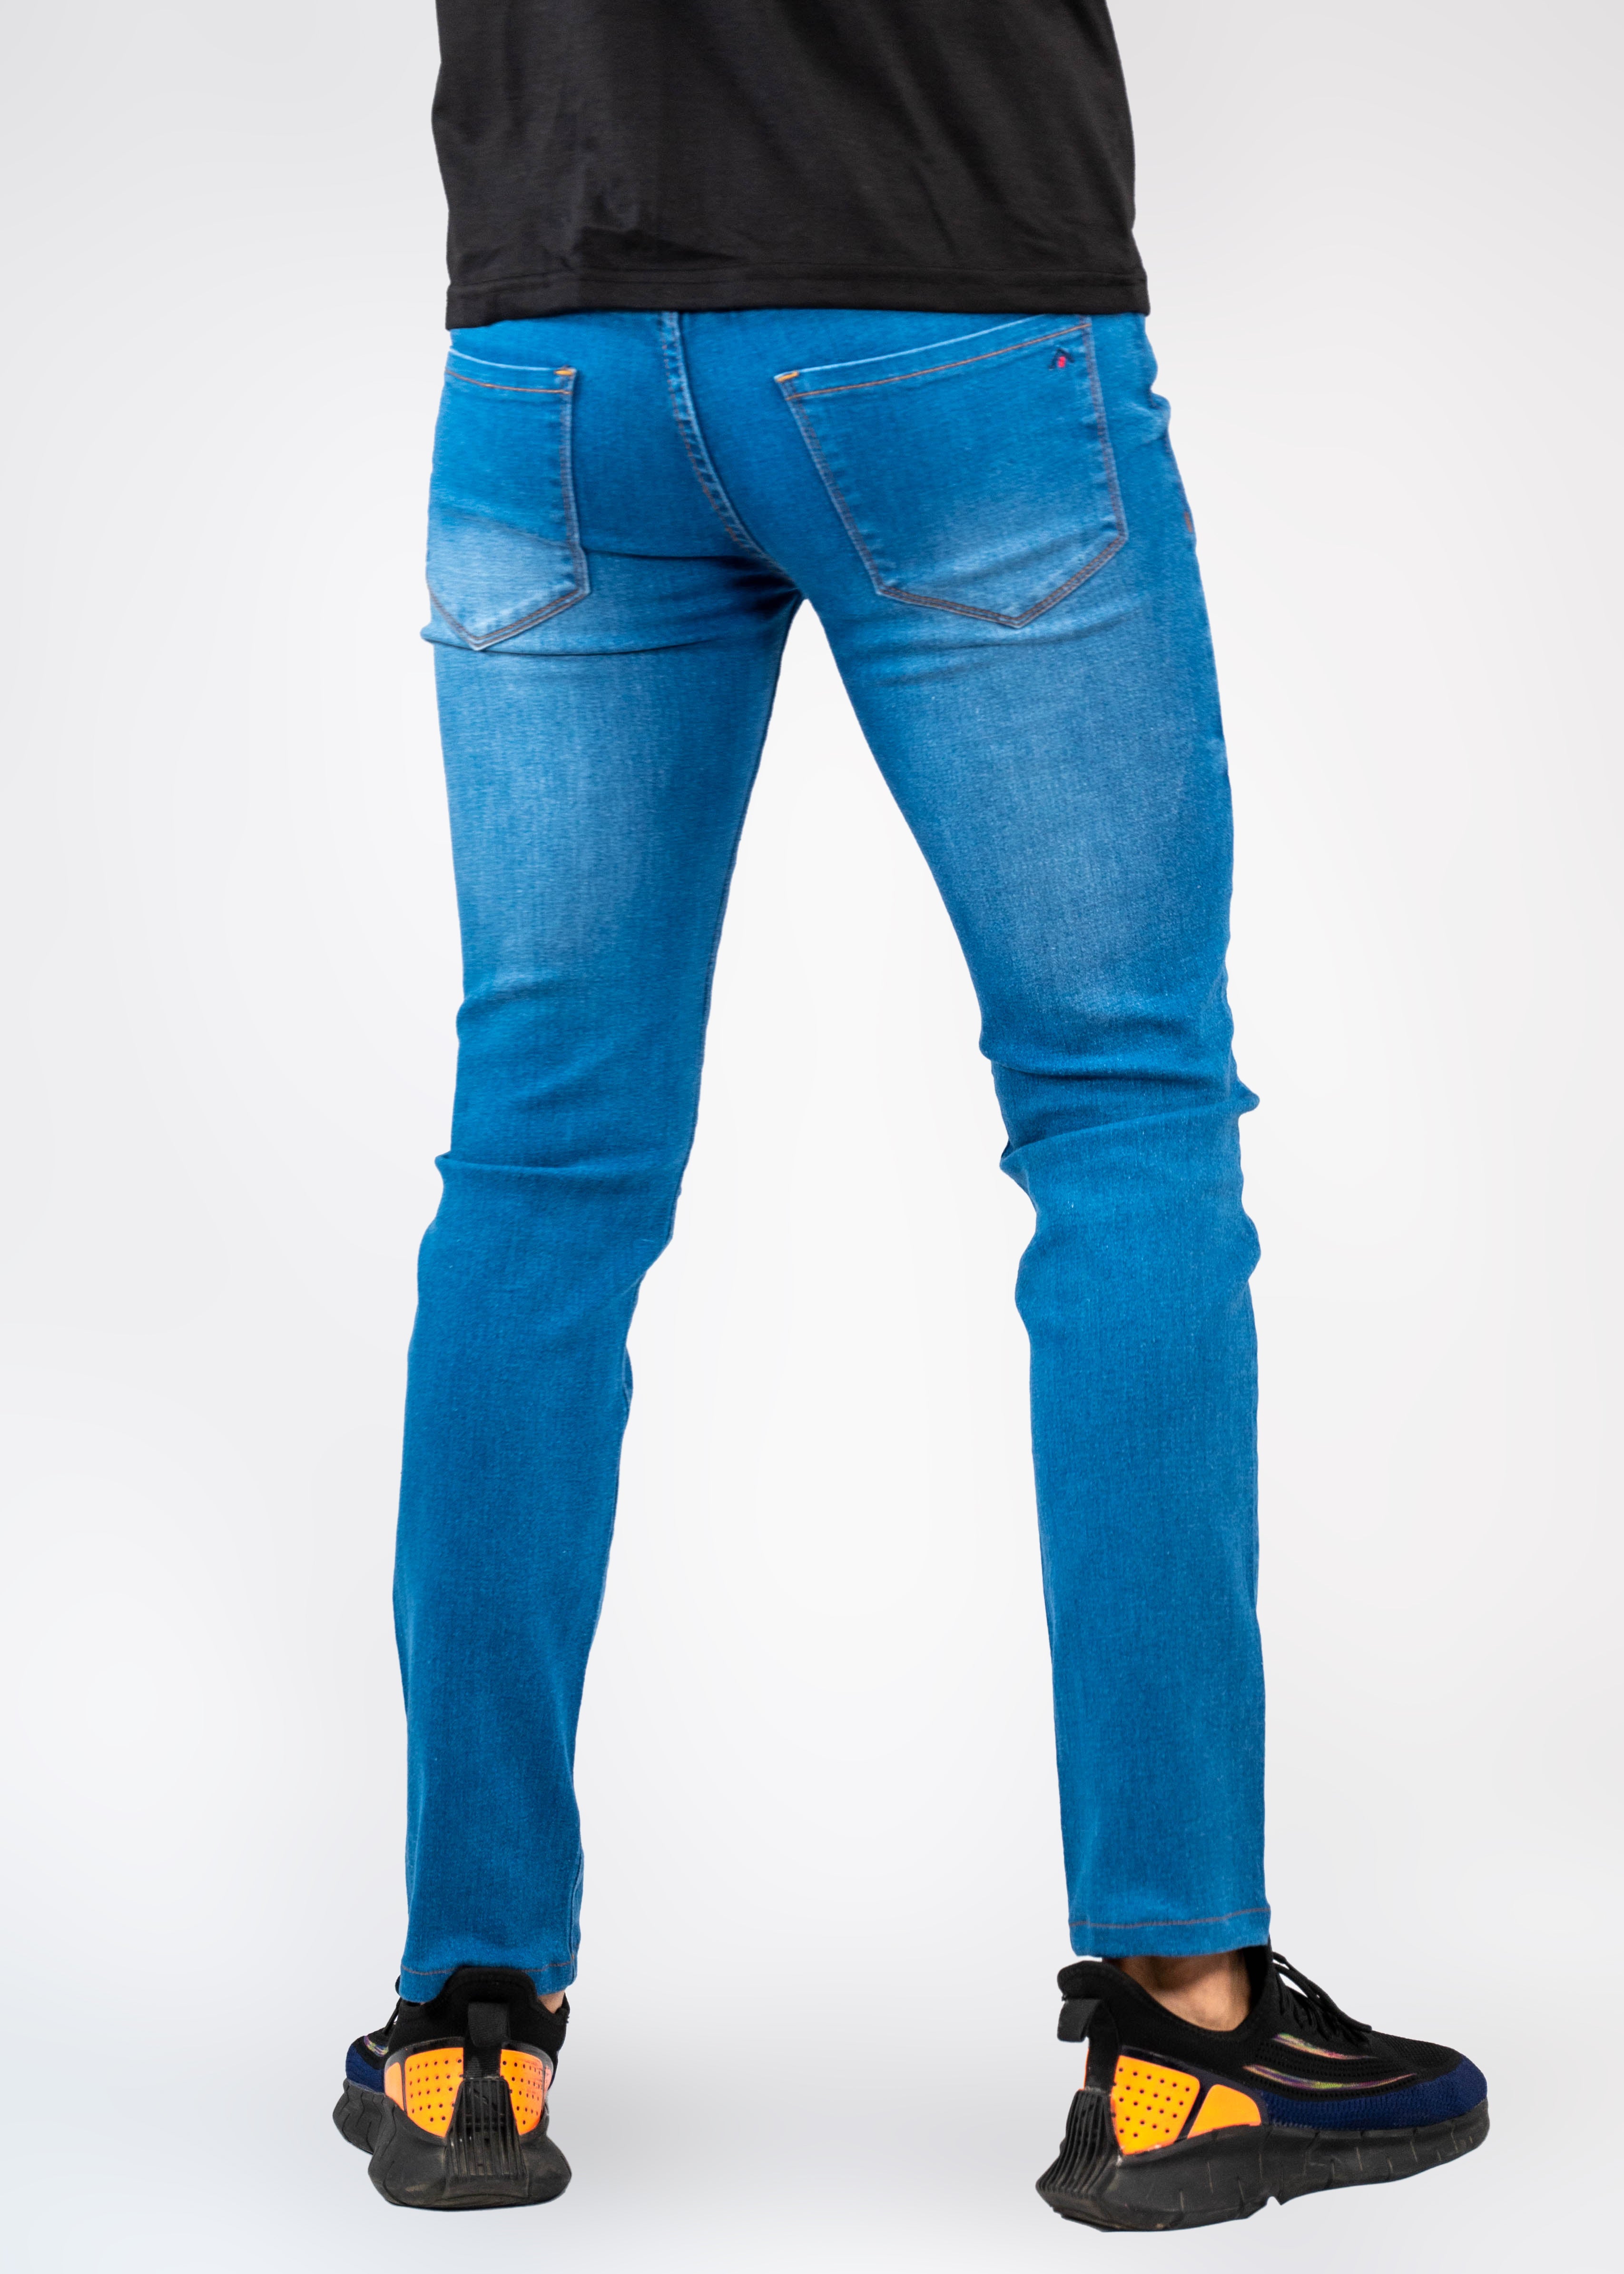 Steel Blue Jeans